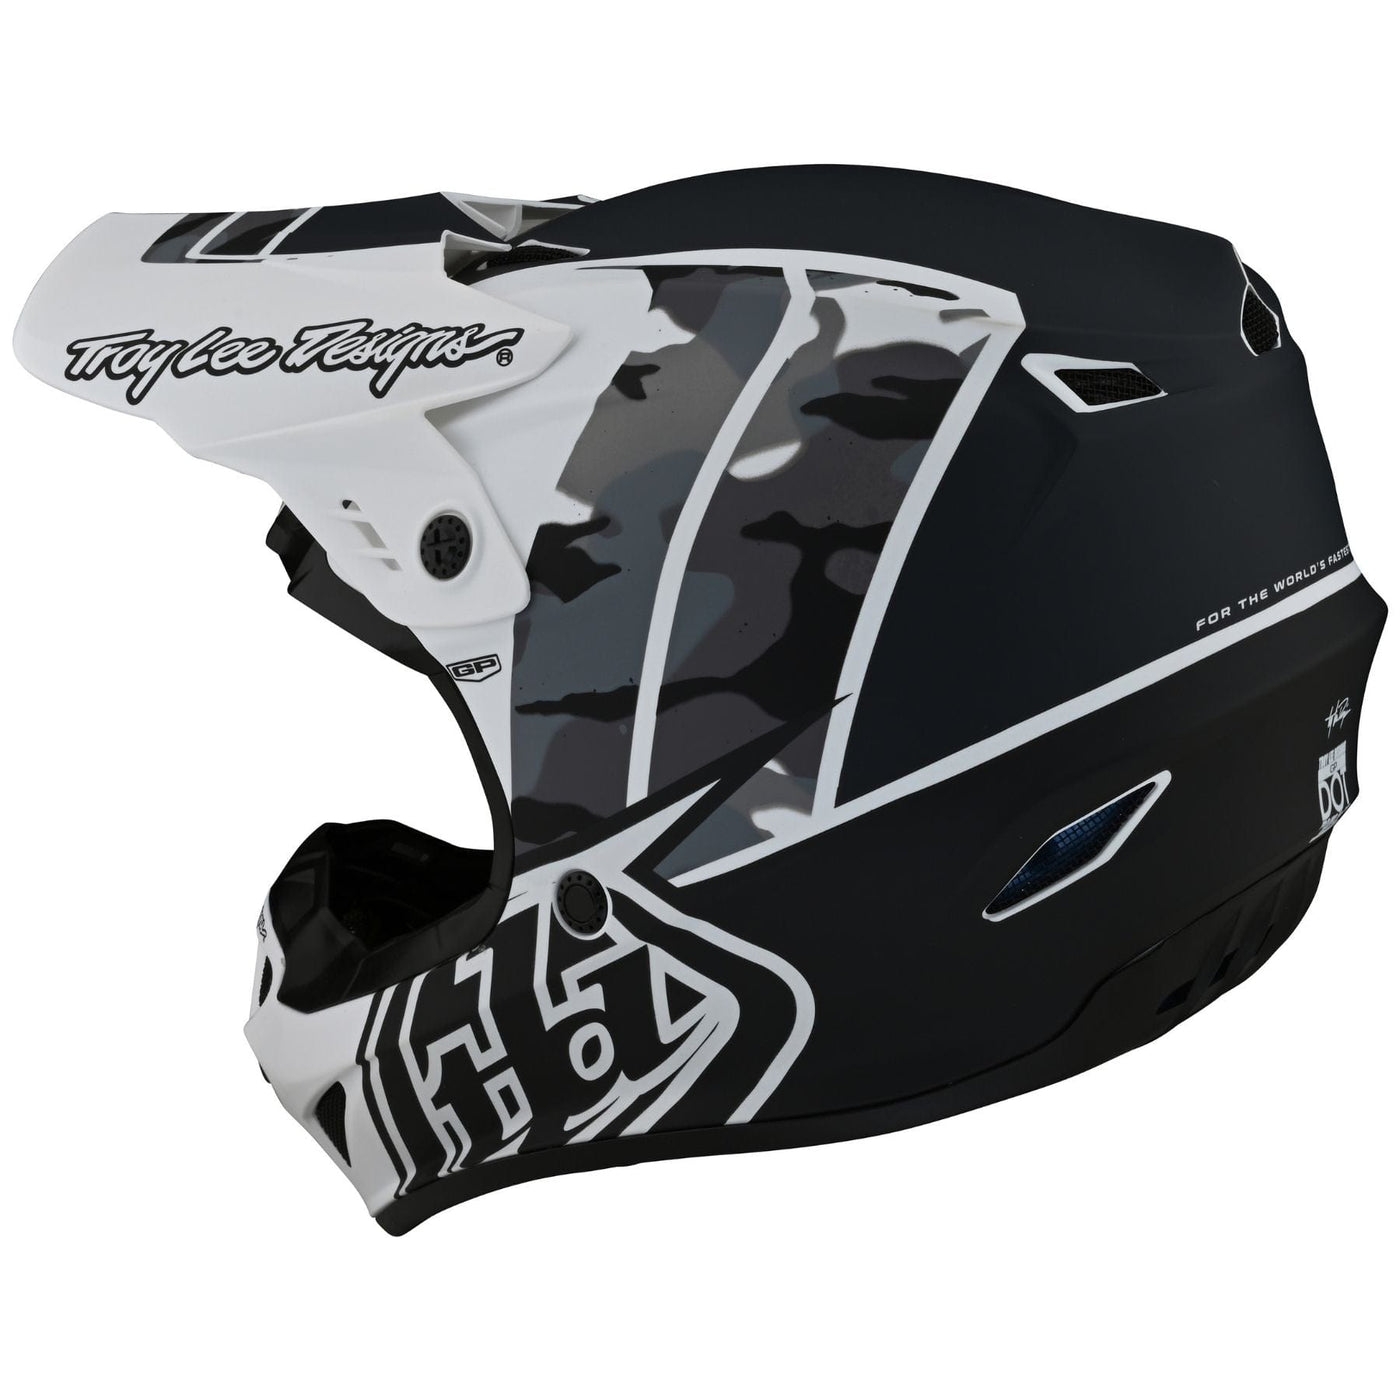 motocross helmet for downhill mountain biking - black and white